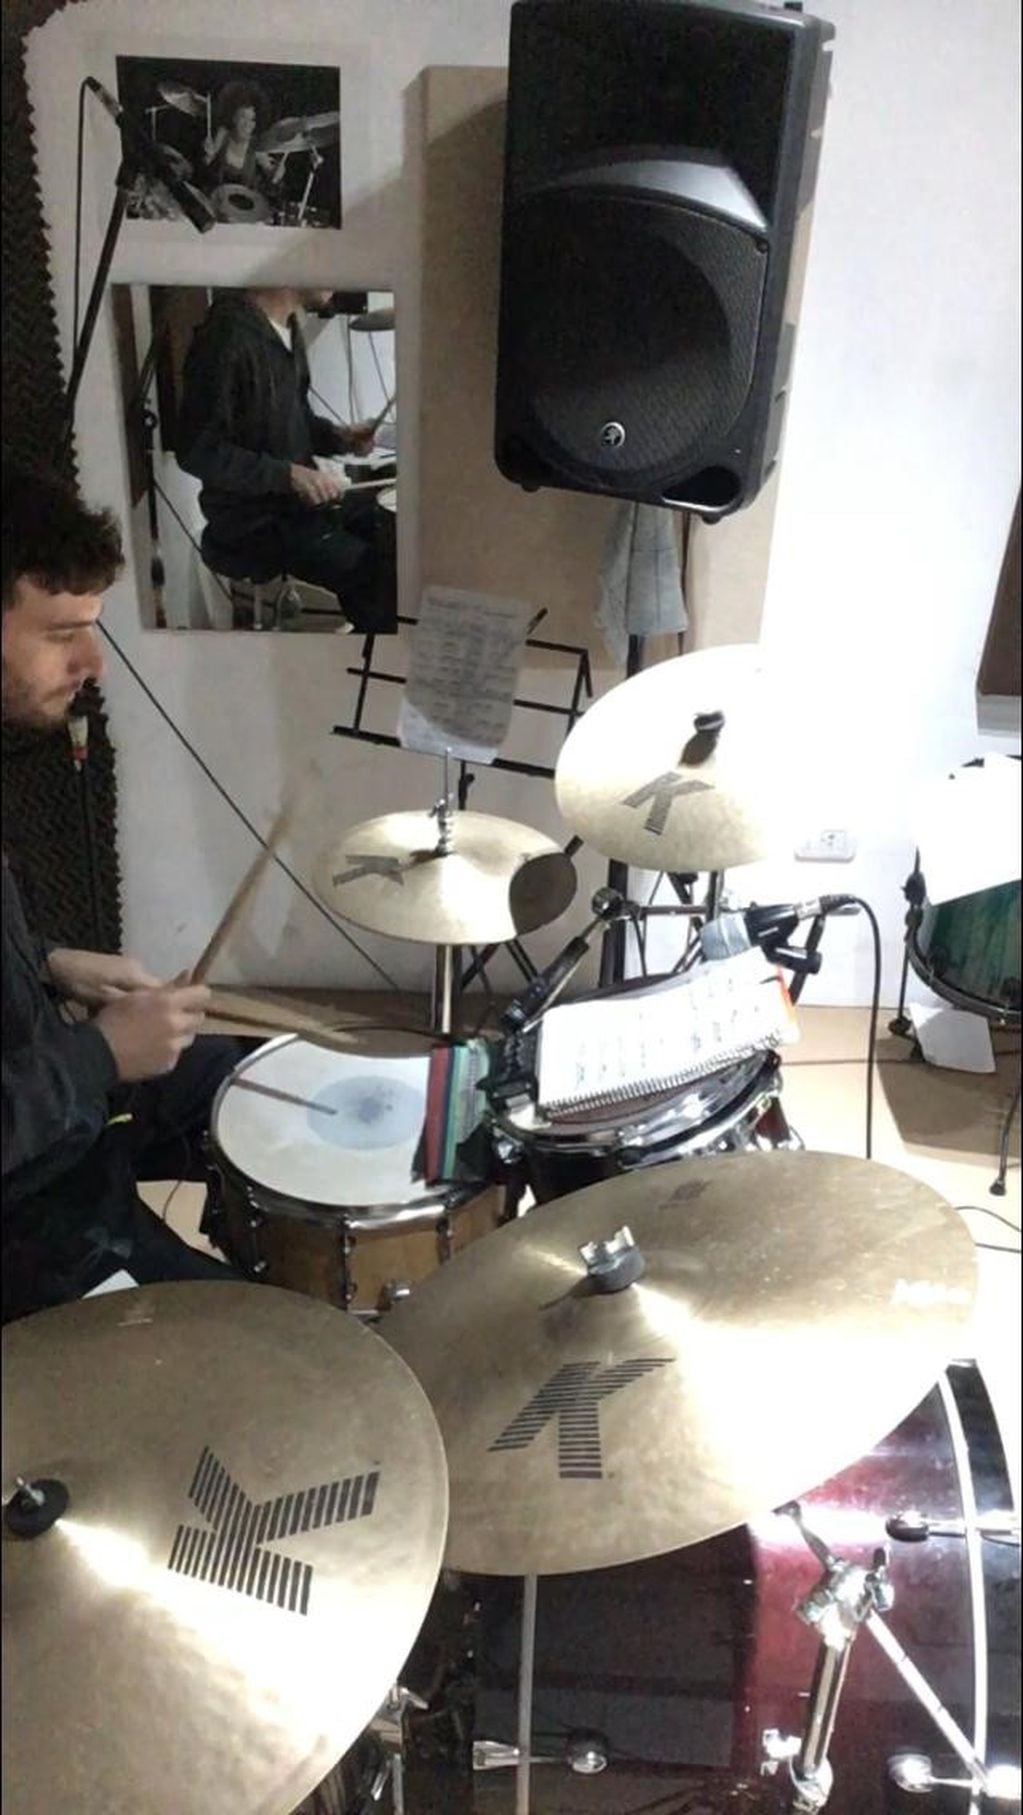 Martín estudia en la Escuela de Música Popular de Avellaneda y se graba tocando la batería para que el profesor lo evalúe por Classroom  (Web)